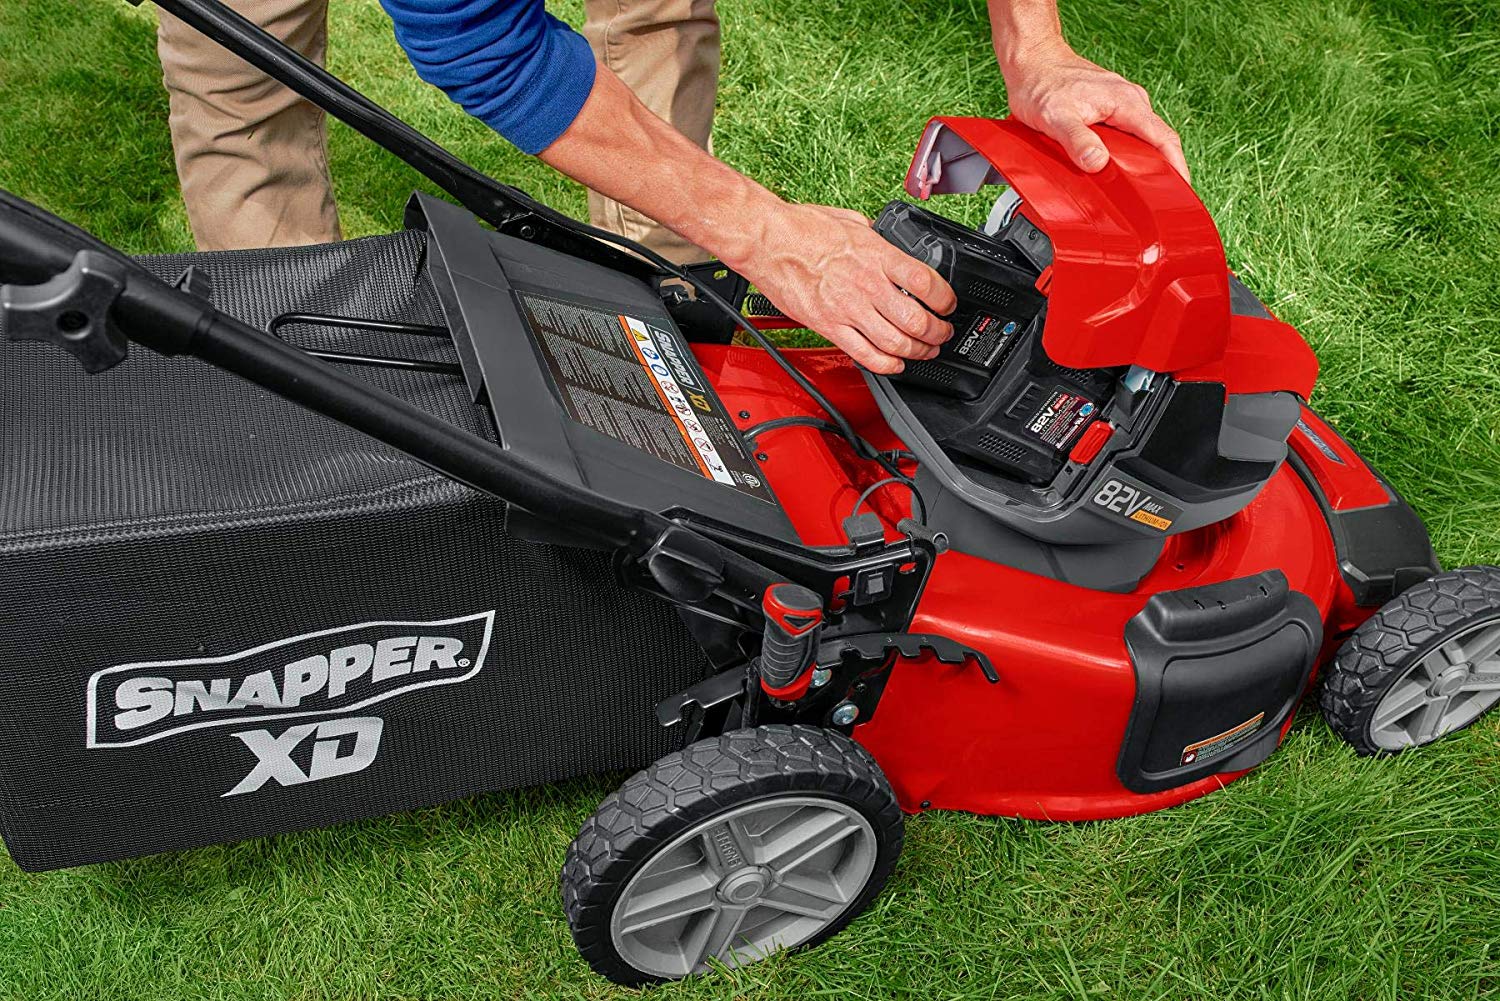 snapper lawn mower